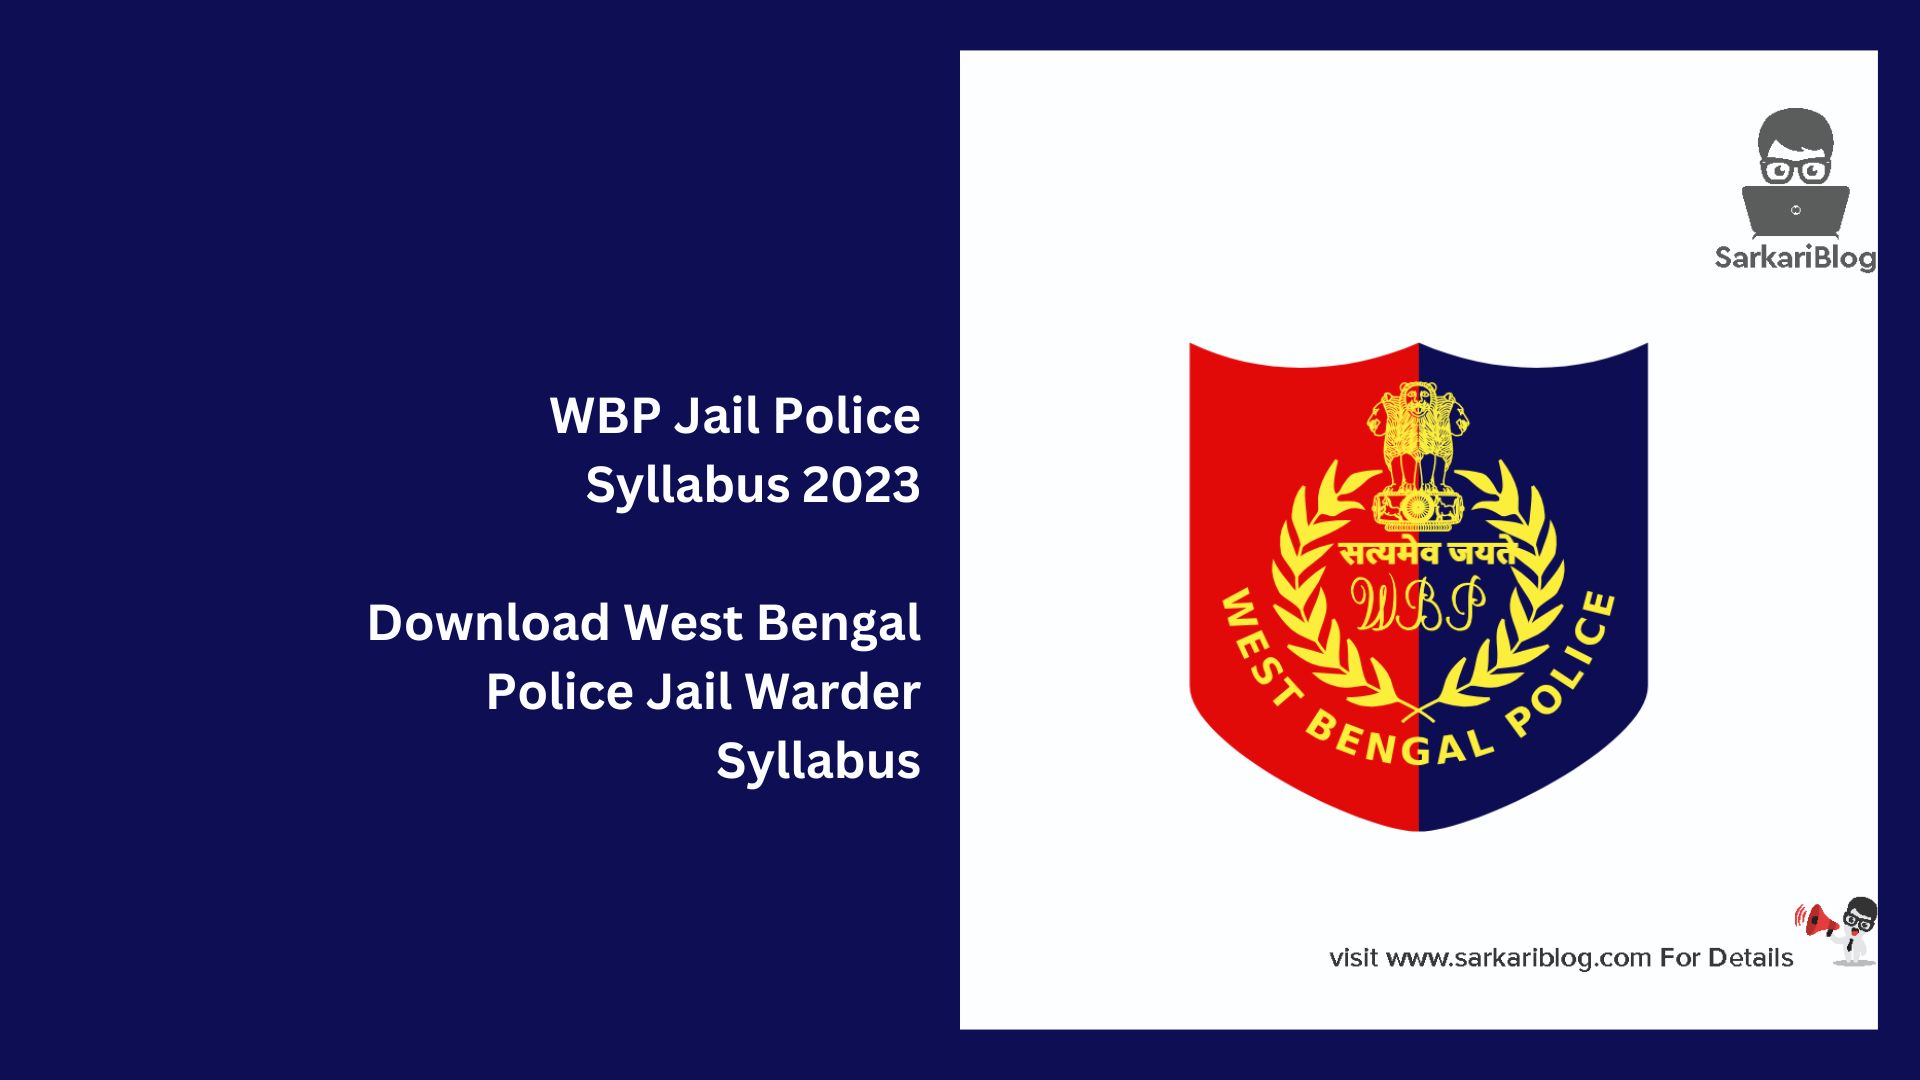 WBP Jail Police Syllabus 2023